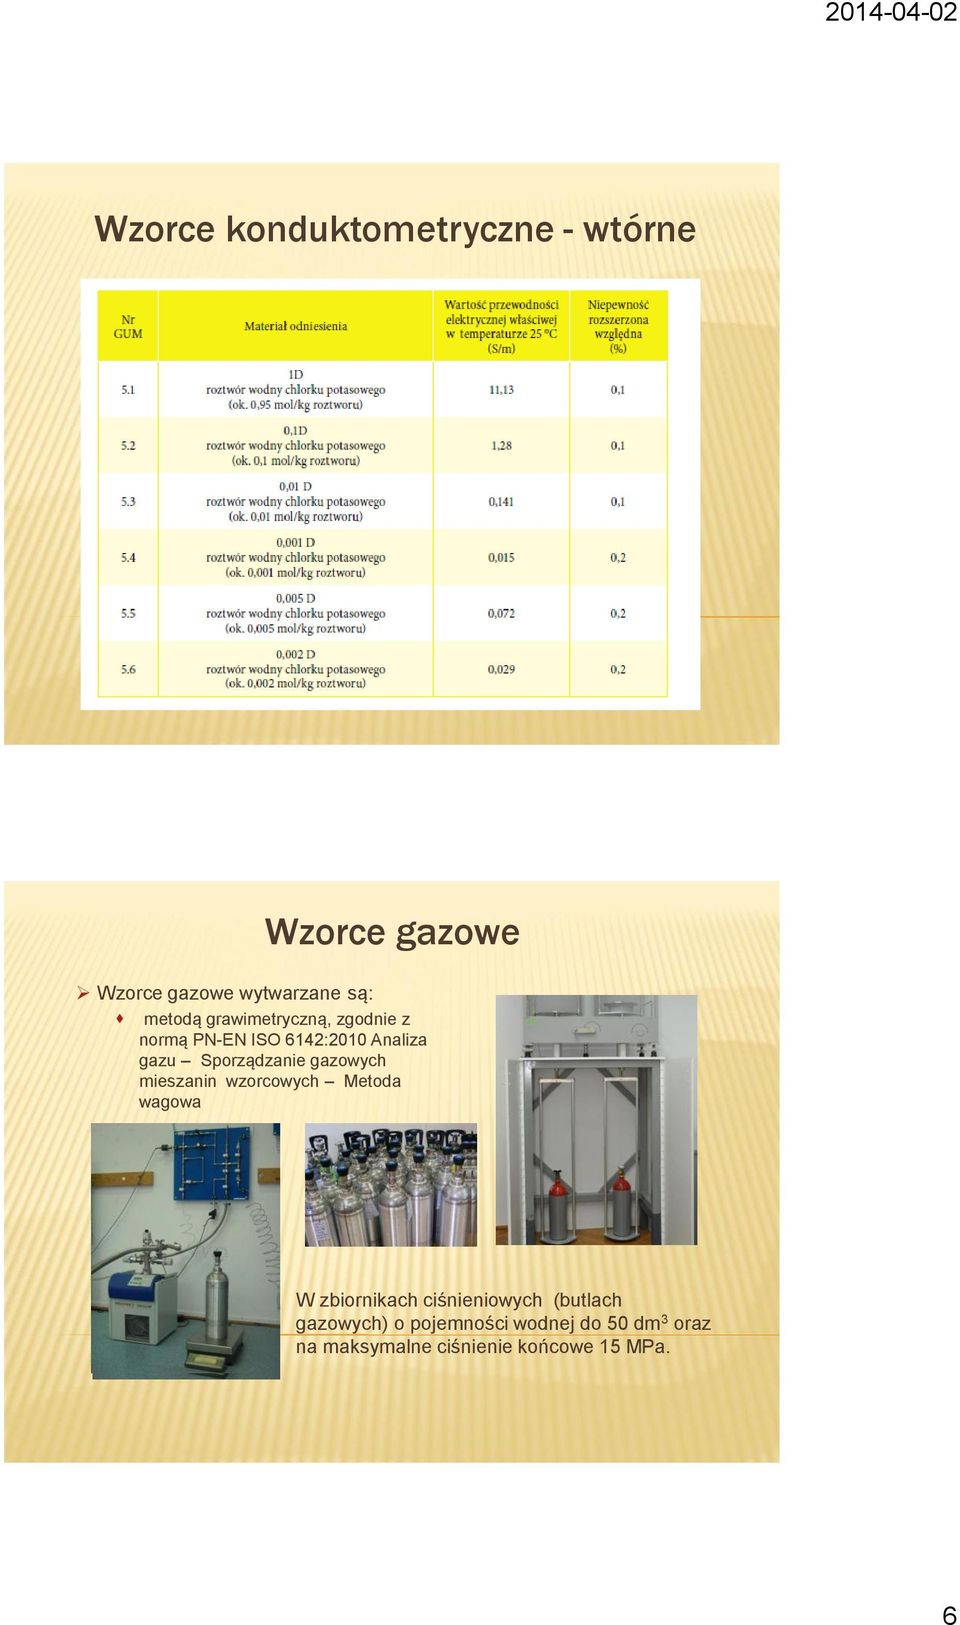 Sporządzanie gazowych mieszanin wzorcowych Metoda wagowa W zbiornikach